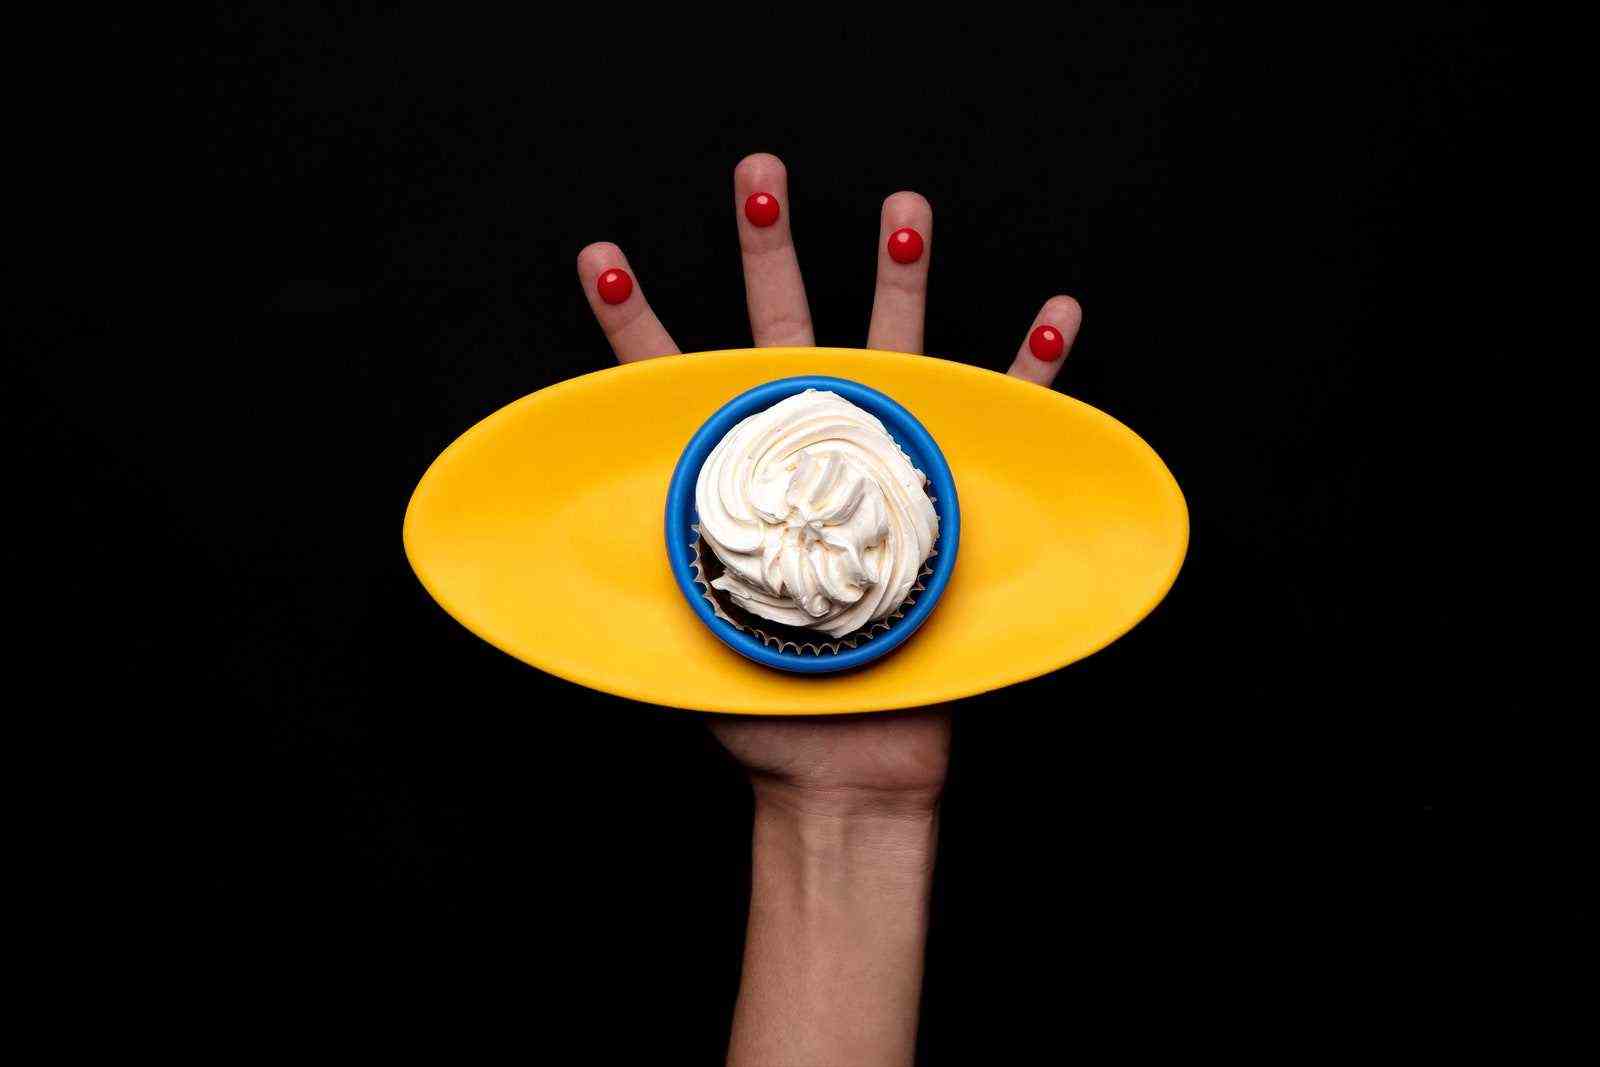 Eine Hand hält eine ovale Platte mit einem Dessert darauf.